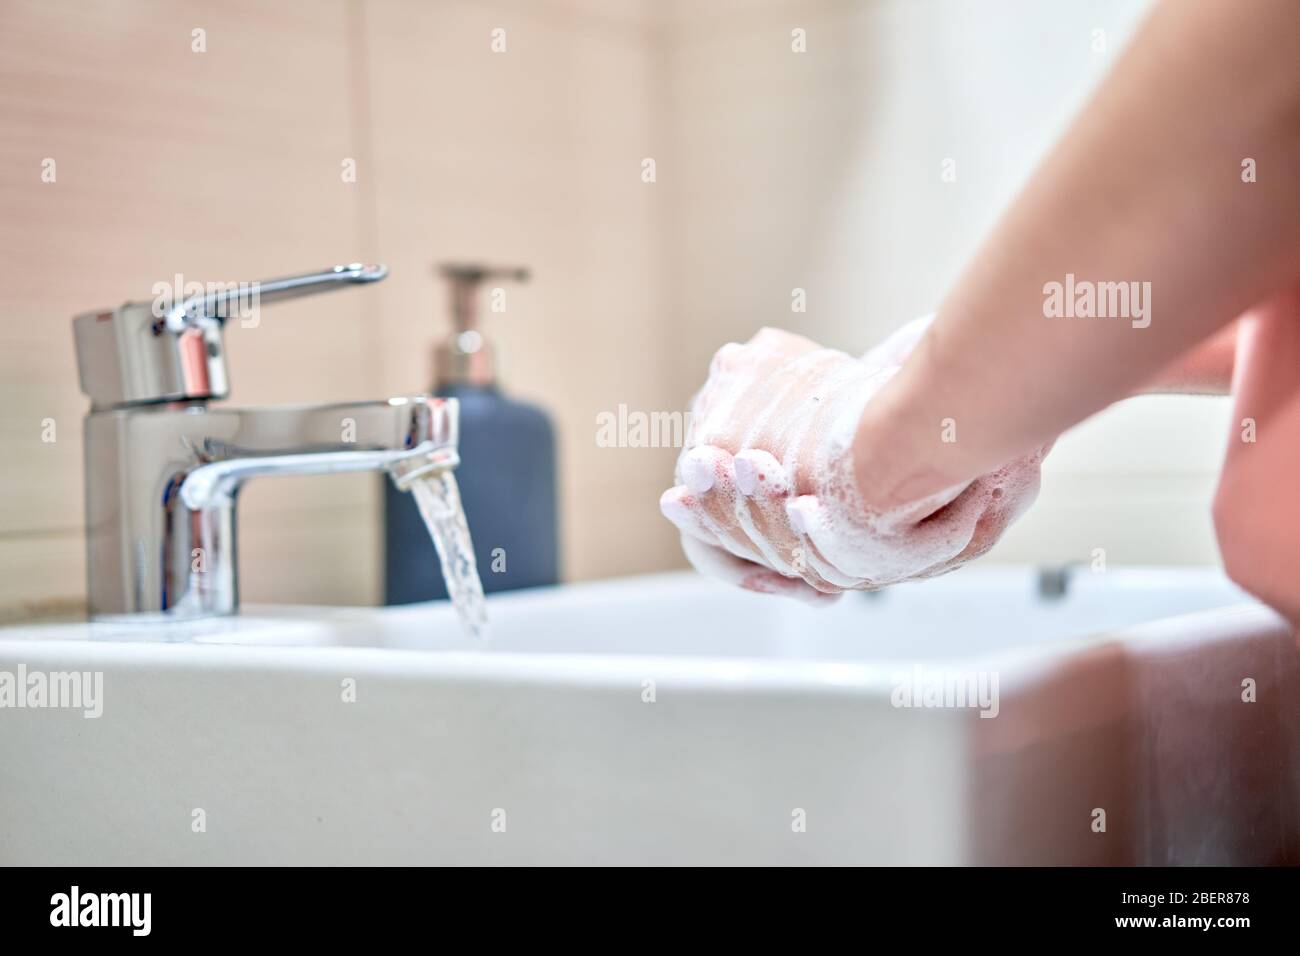 Lavage des mains avec du savon sous l'eau dans la salle de bains Banque D'Images